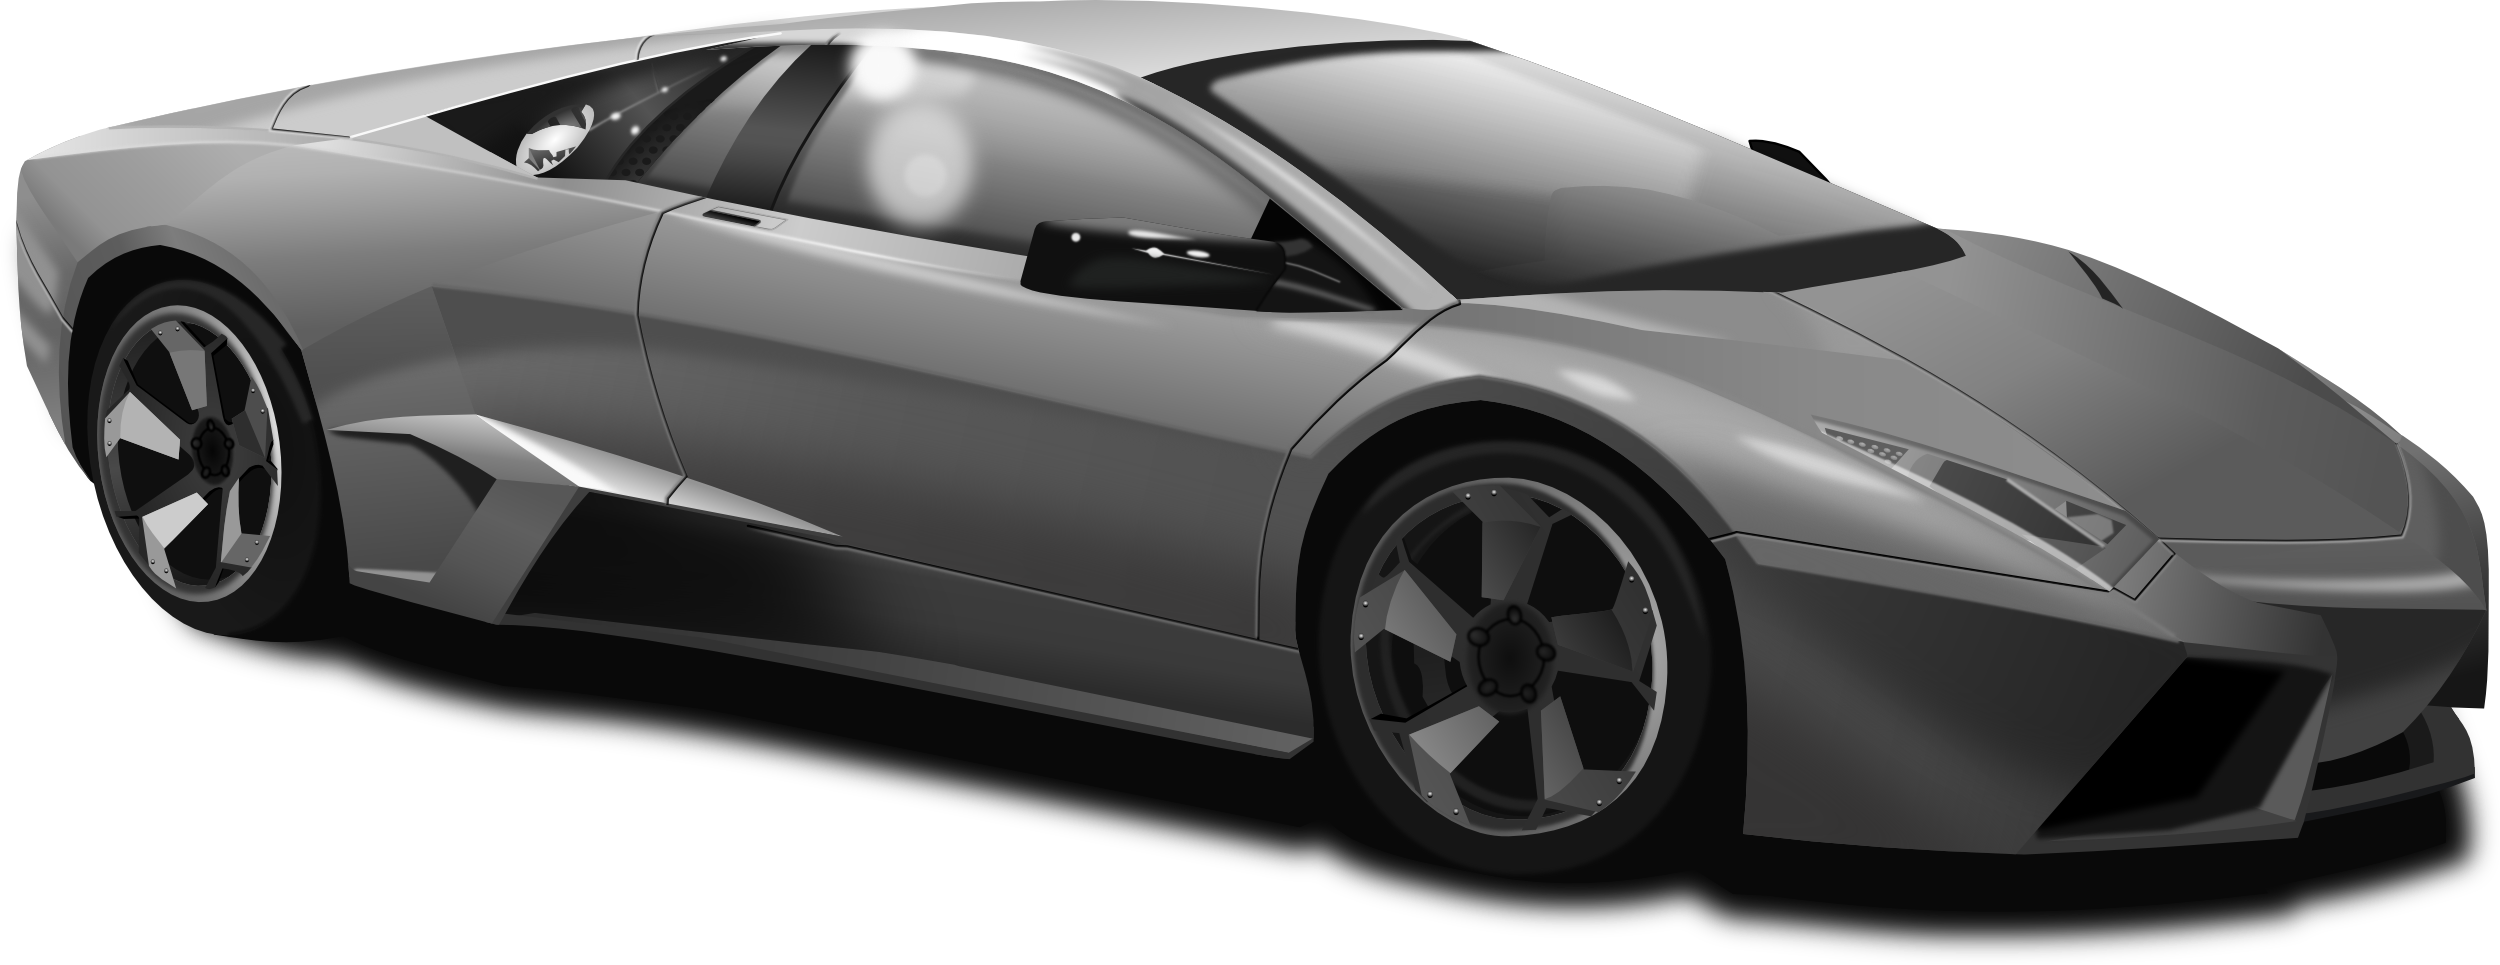 Lamborghini Diablo Transparent Image